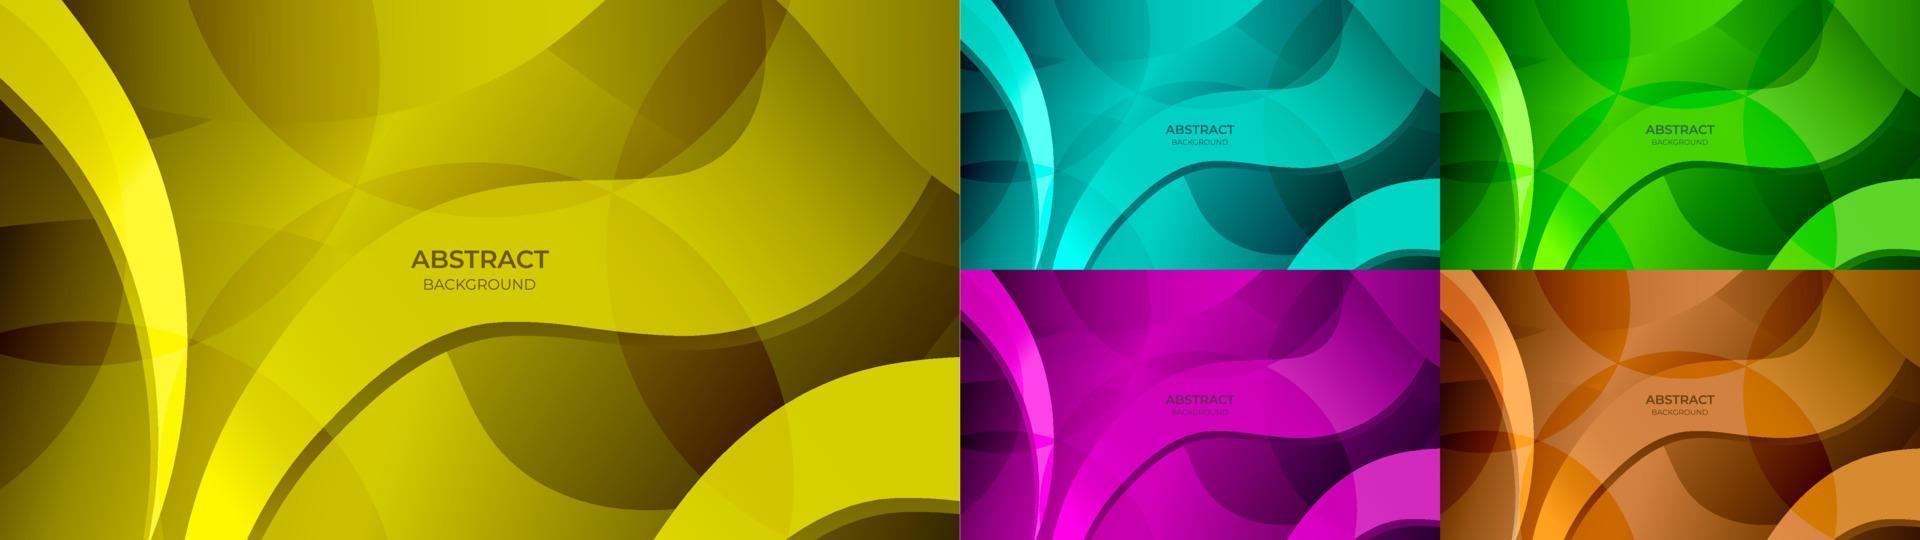 abstrakter Wellenhintergrund bunter Farbverlauf in Gelb, Blau, Grün, Lila und Orange. Vektor-Illustration vektor